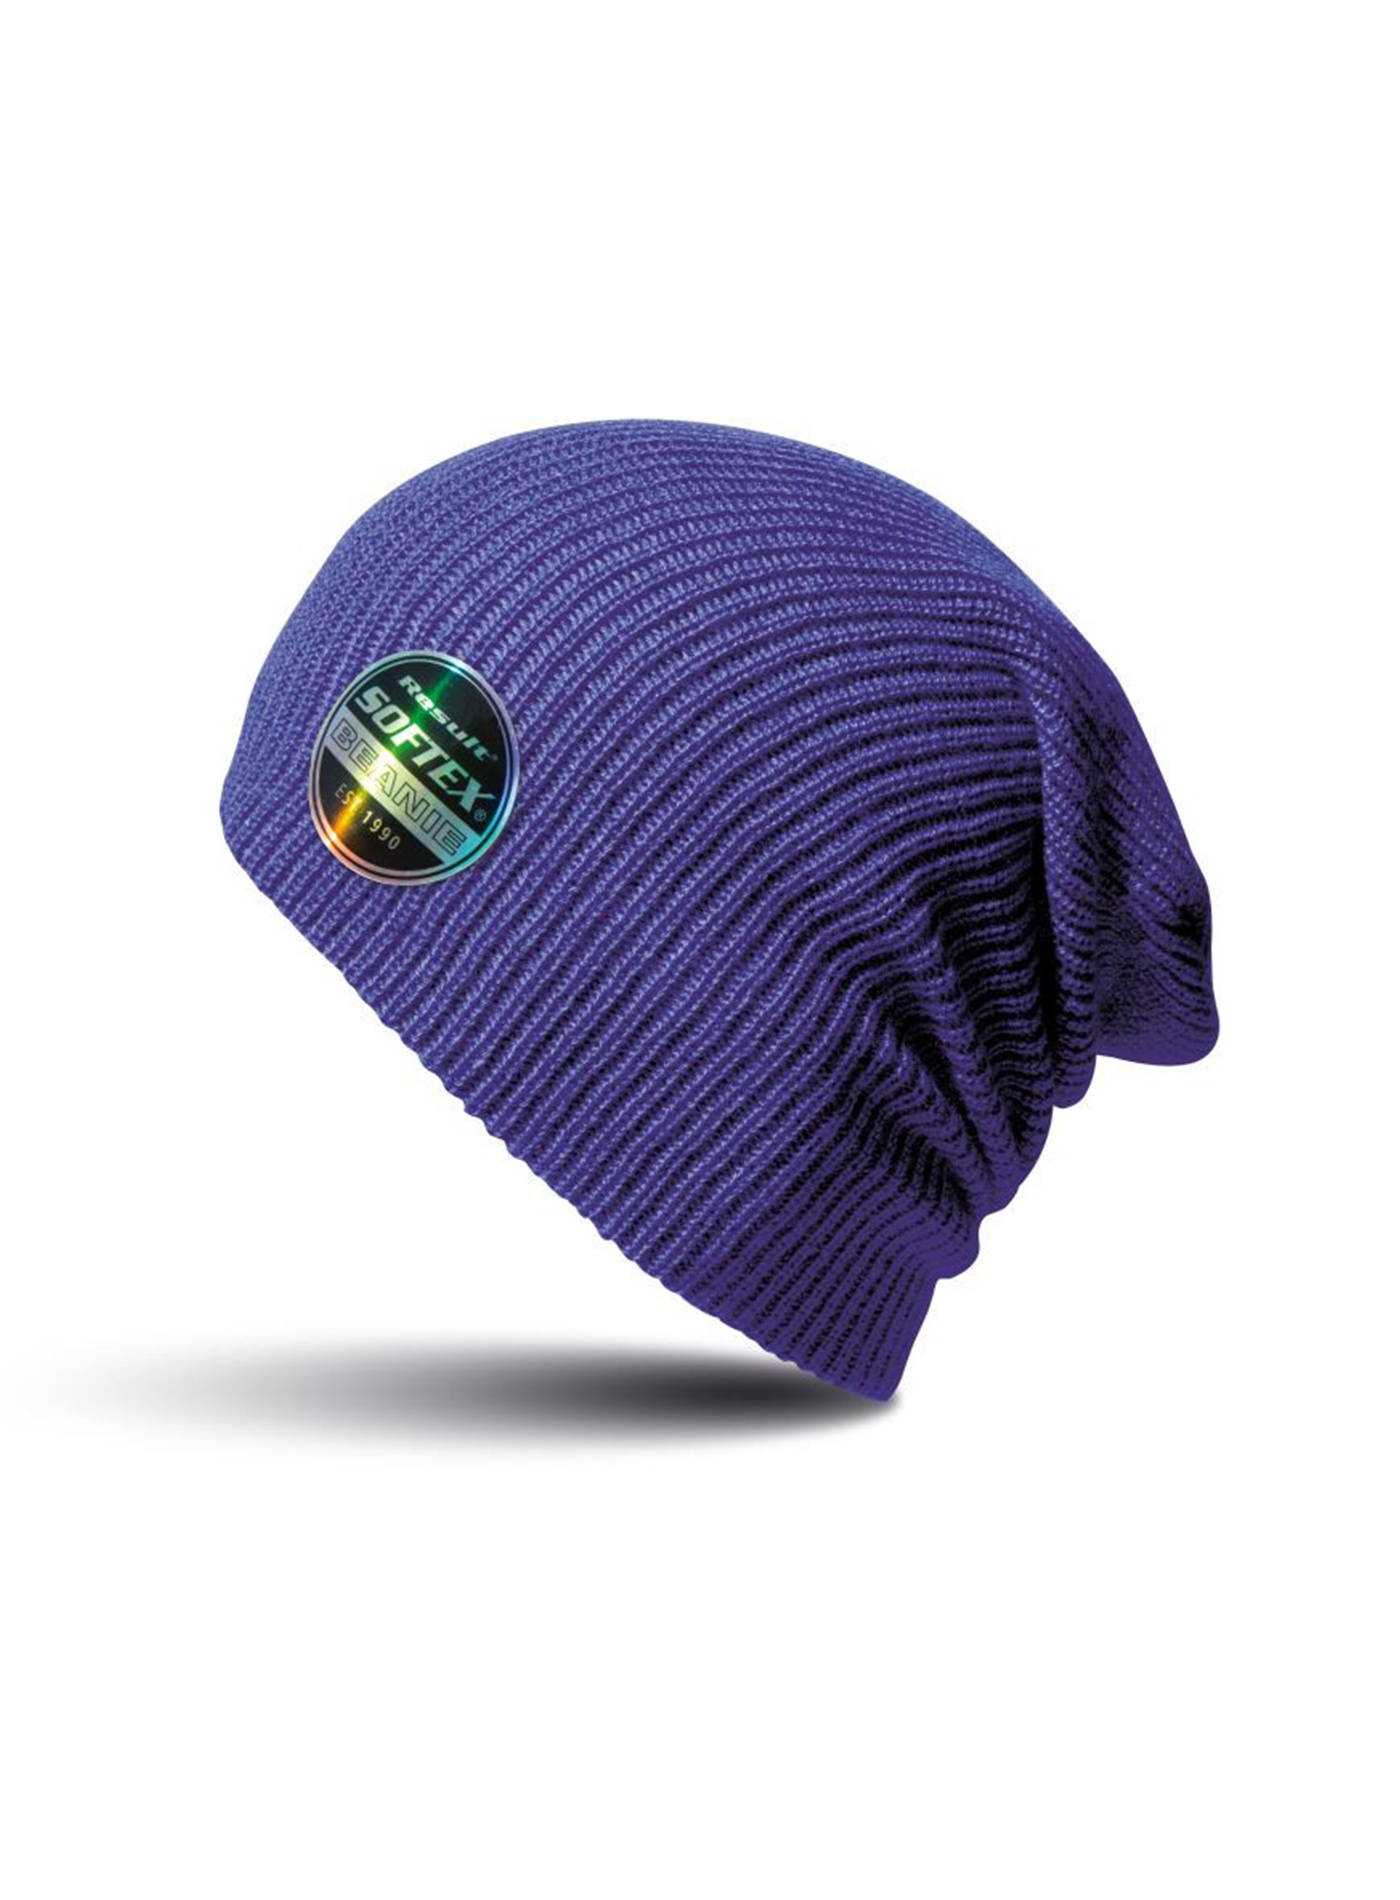 Čepice Result headwear softex beanie - Tmavě fialová univerzal